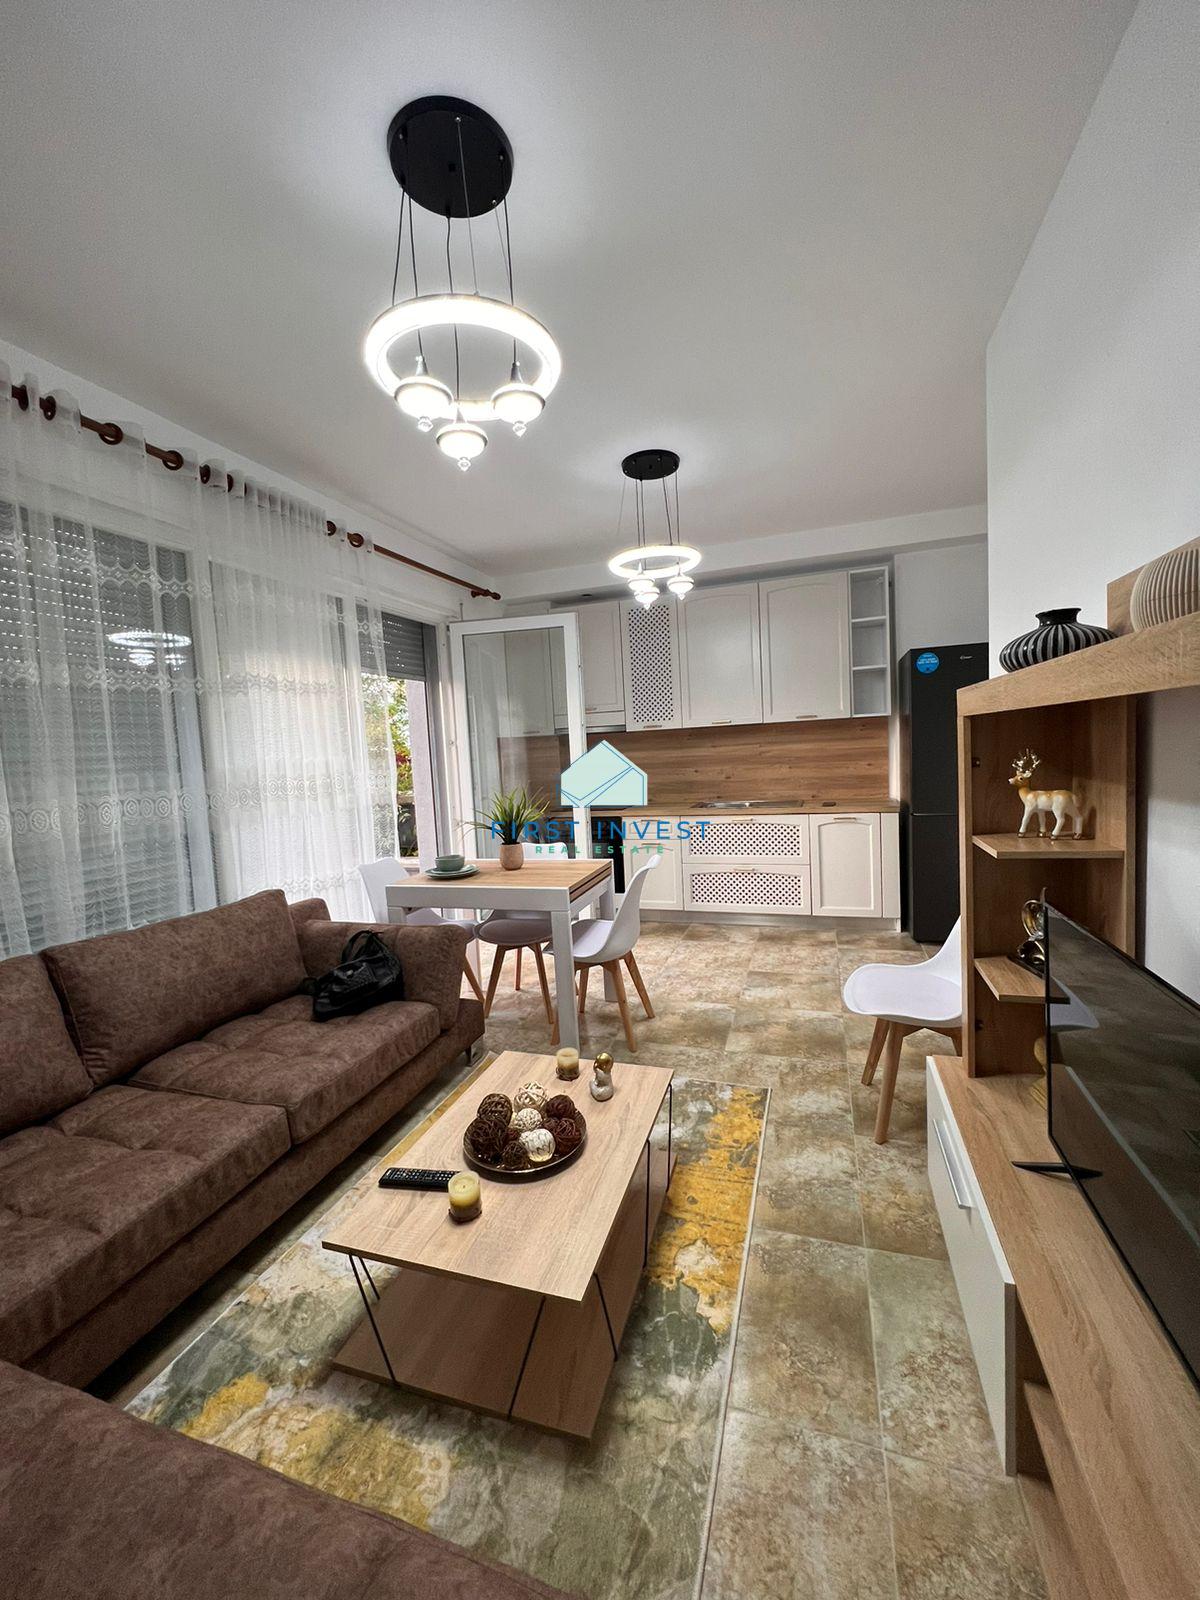 Apartament 1+1 me qera ne zonen siper Kopshtit Botanik ne Tirane.